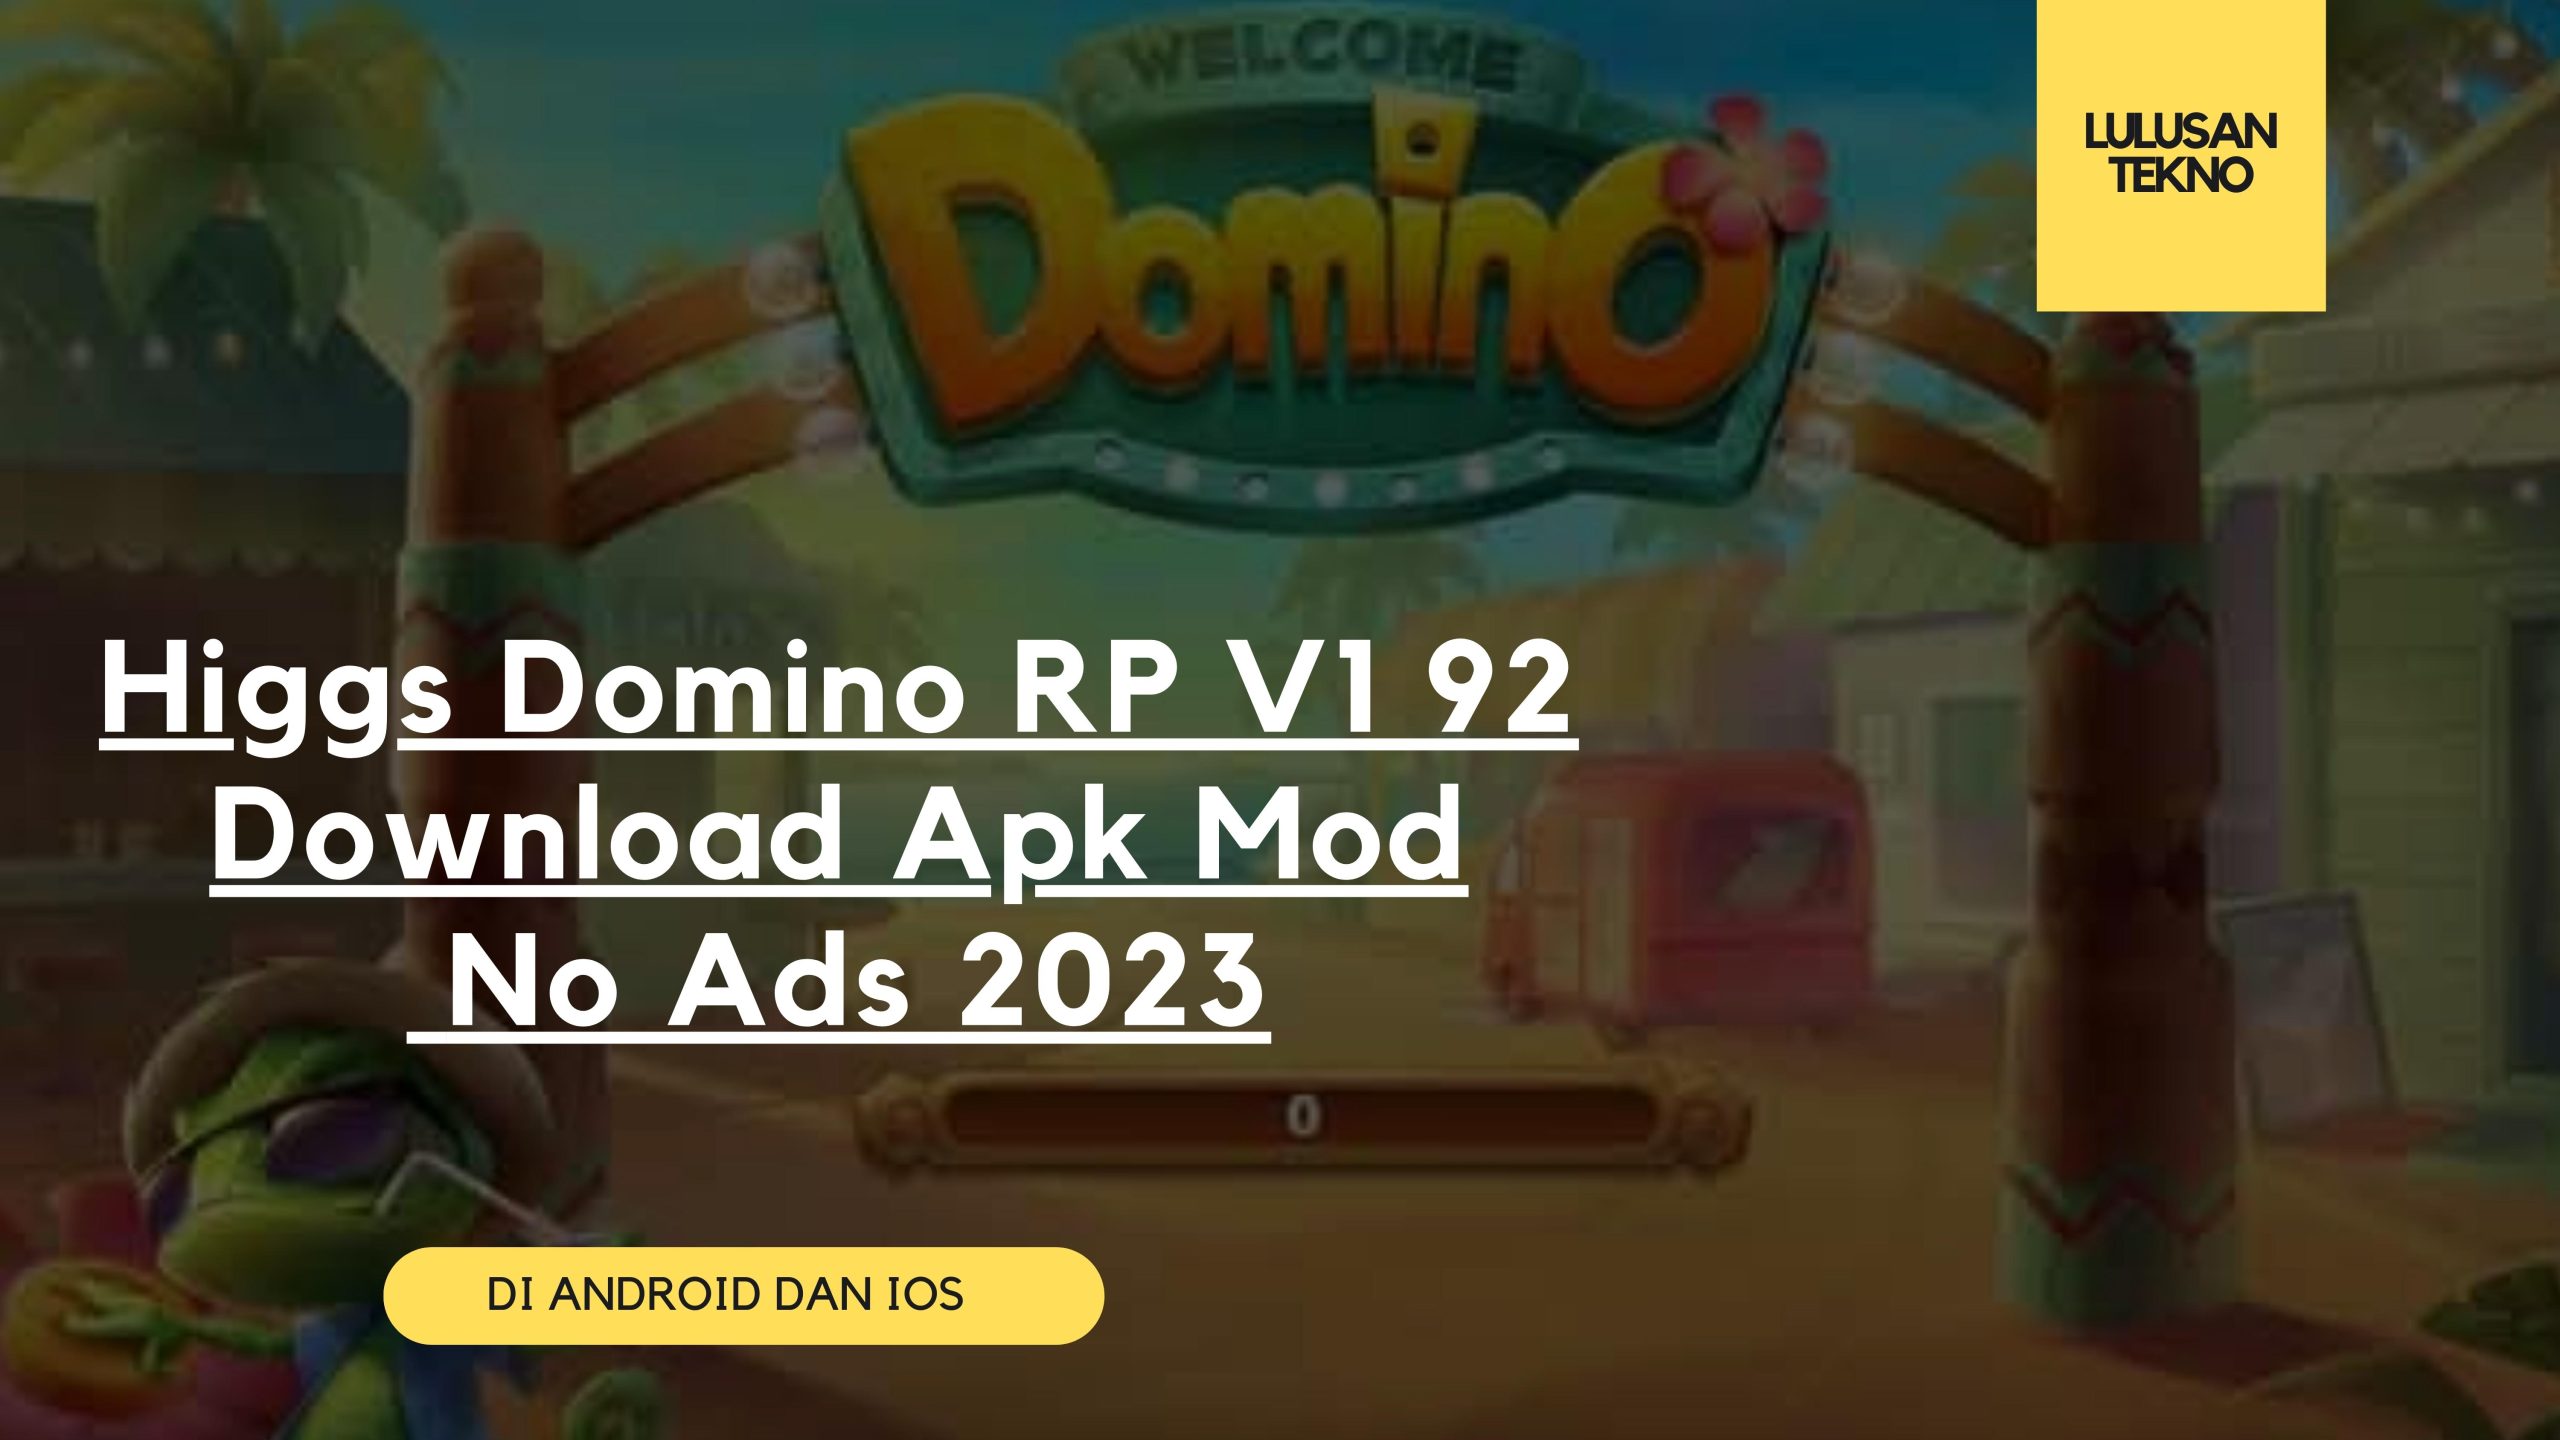 Higgs Domino RP V1 92 Download Apk Mod No Ads 2023